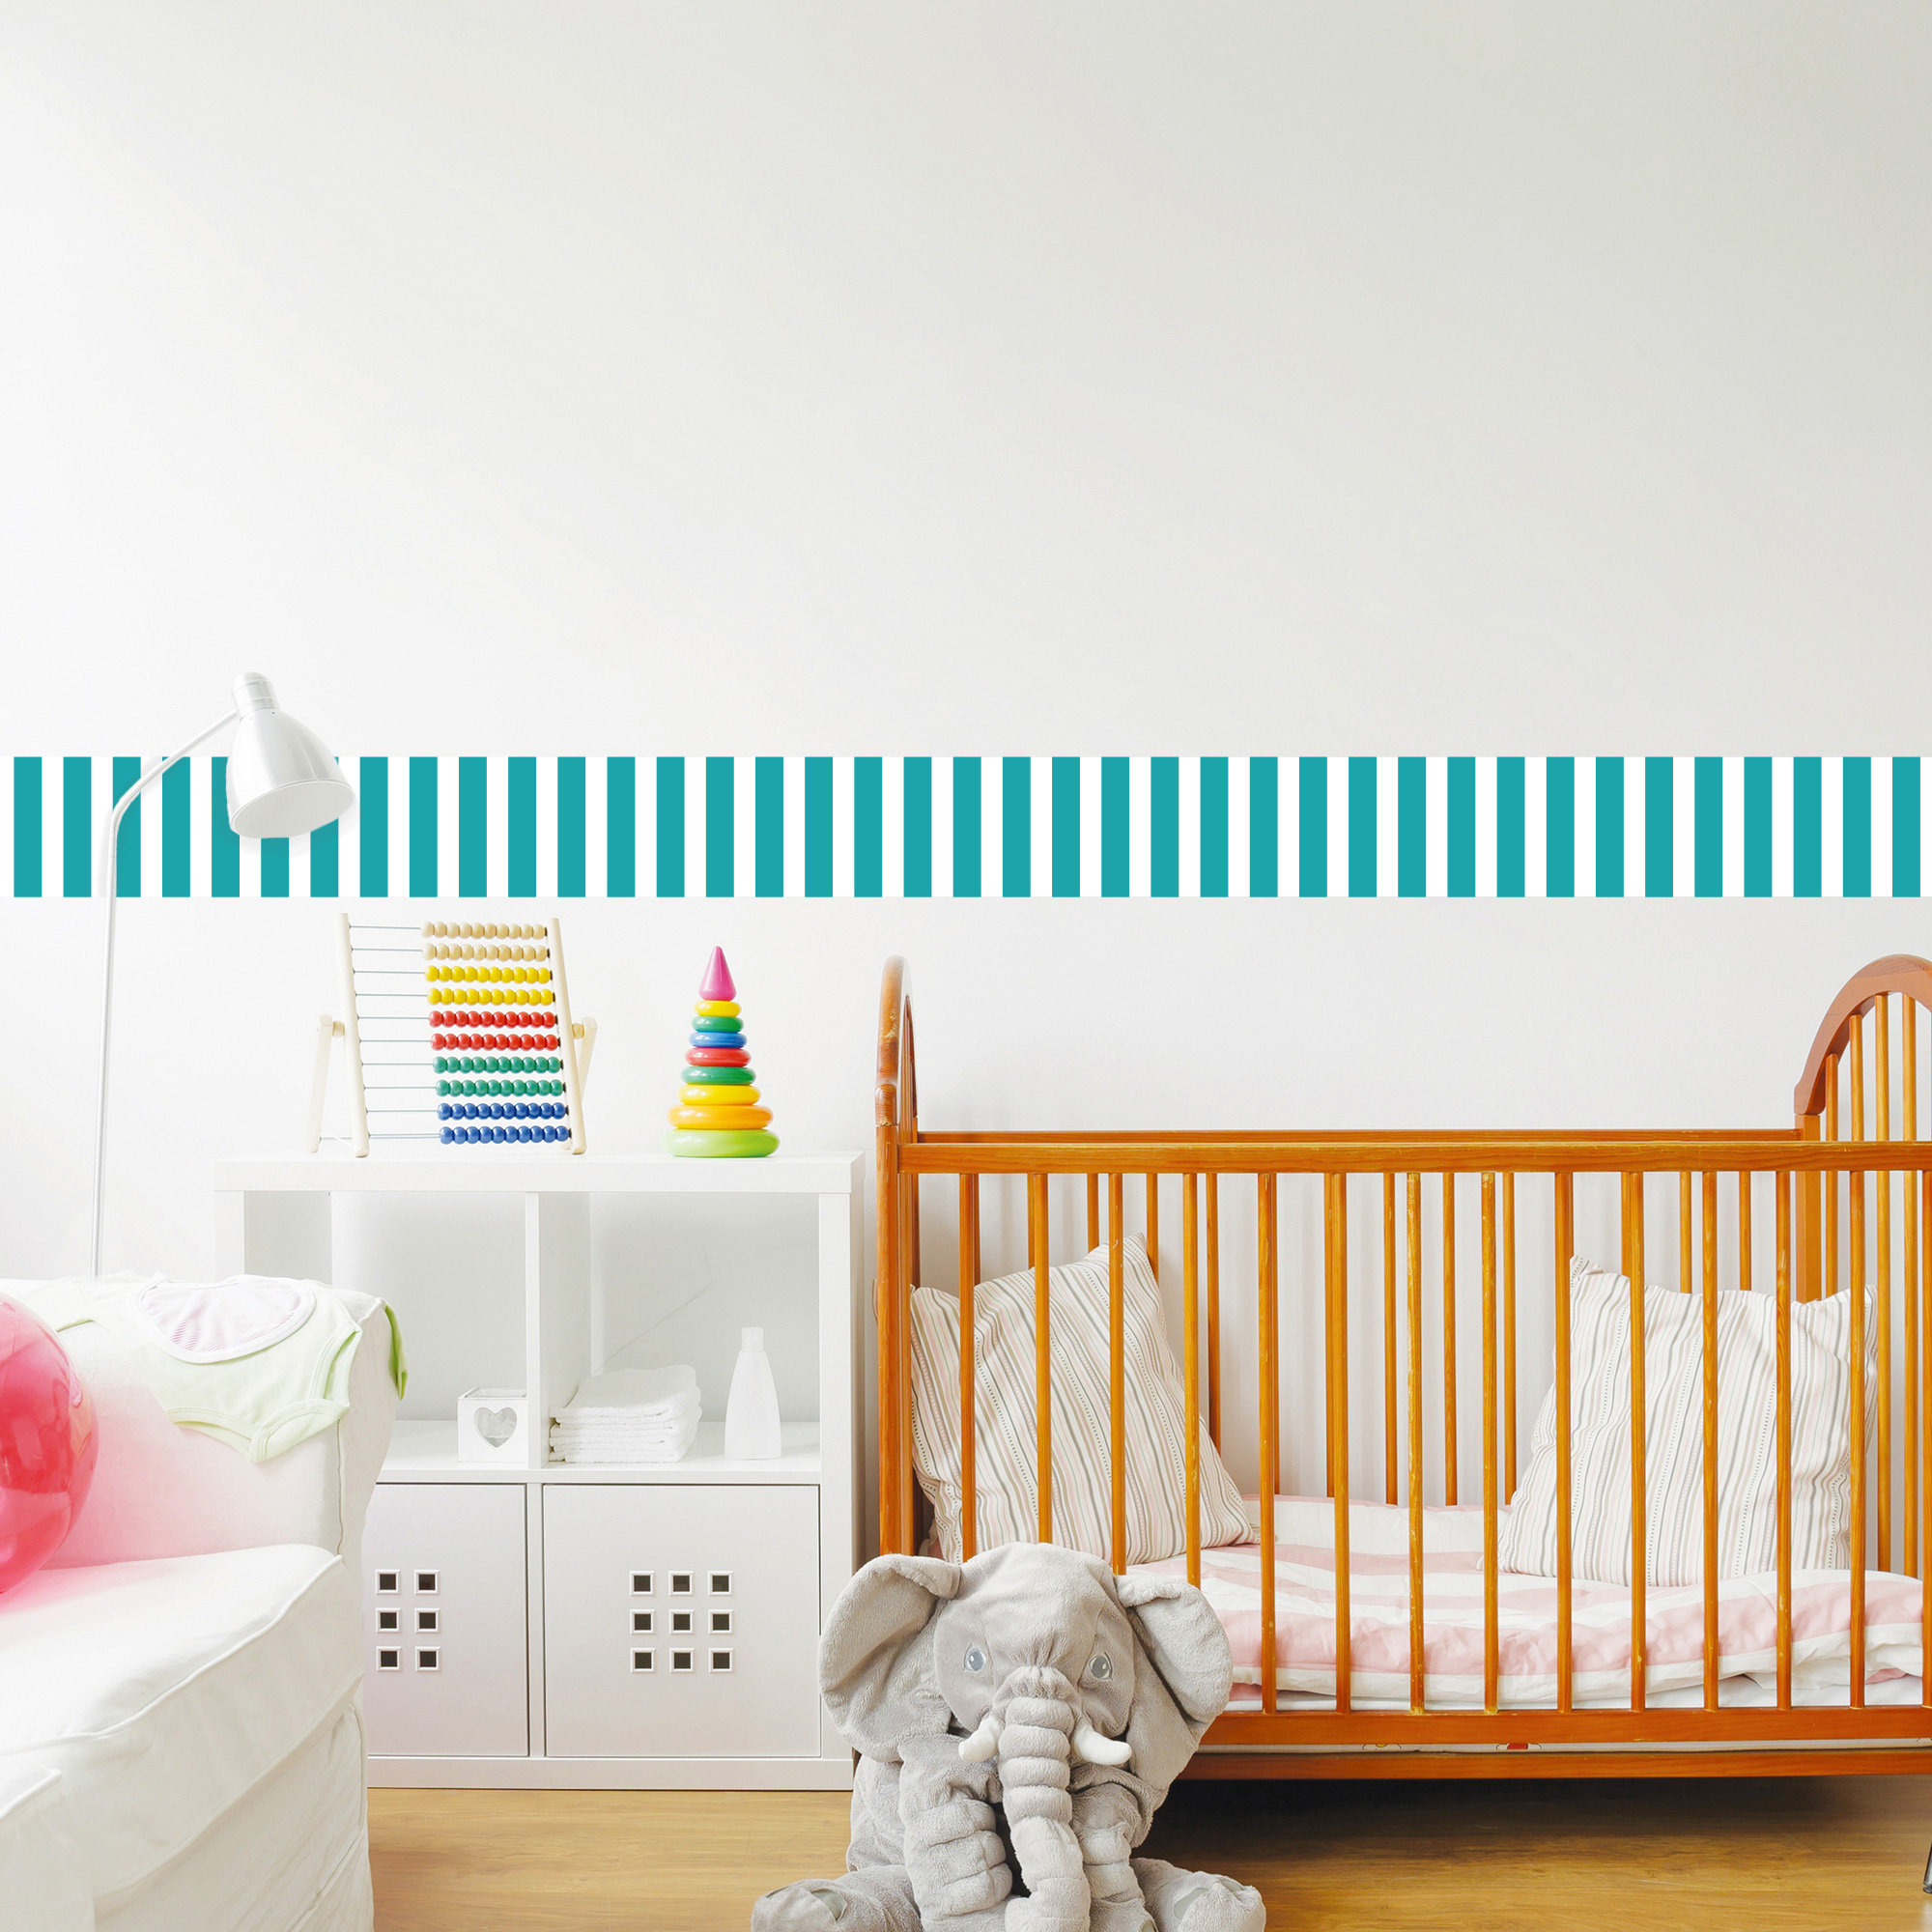 Frise Murale adhésive rayure tendance Envie de redonner du cachet à votre intérieur grâce au Home Staging ? N'hésitez plus, cette frise adhésive décorative Rayure Bleu Lagon Hadrien est faite pour vos murs !